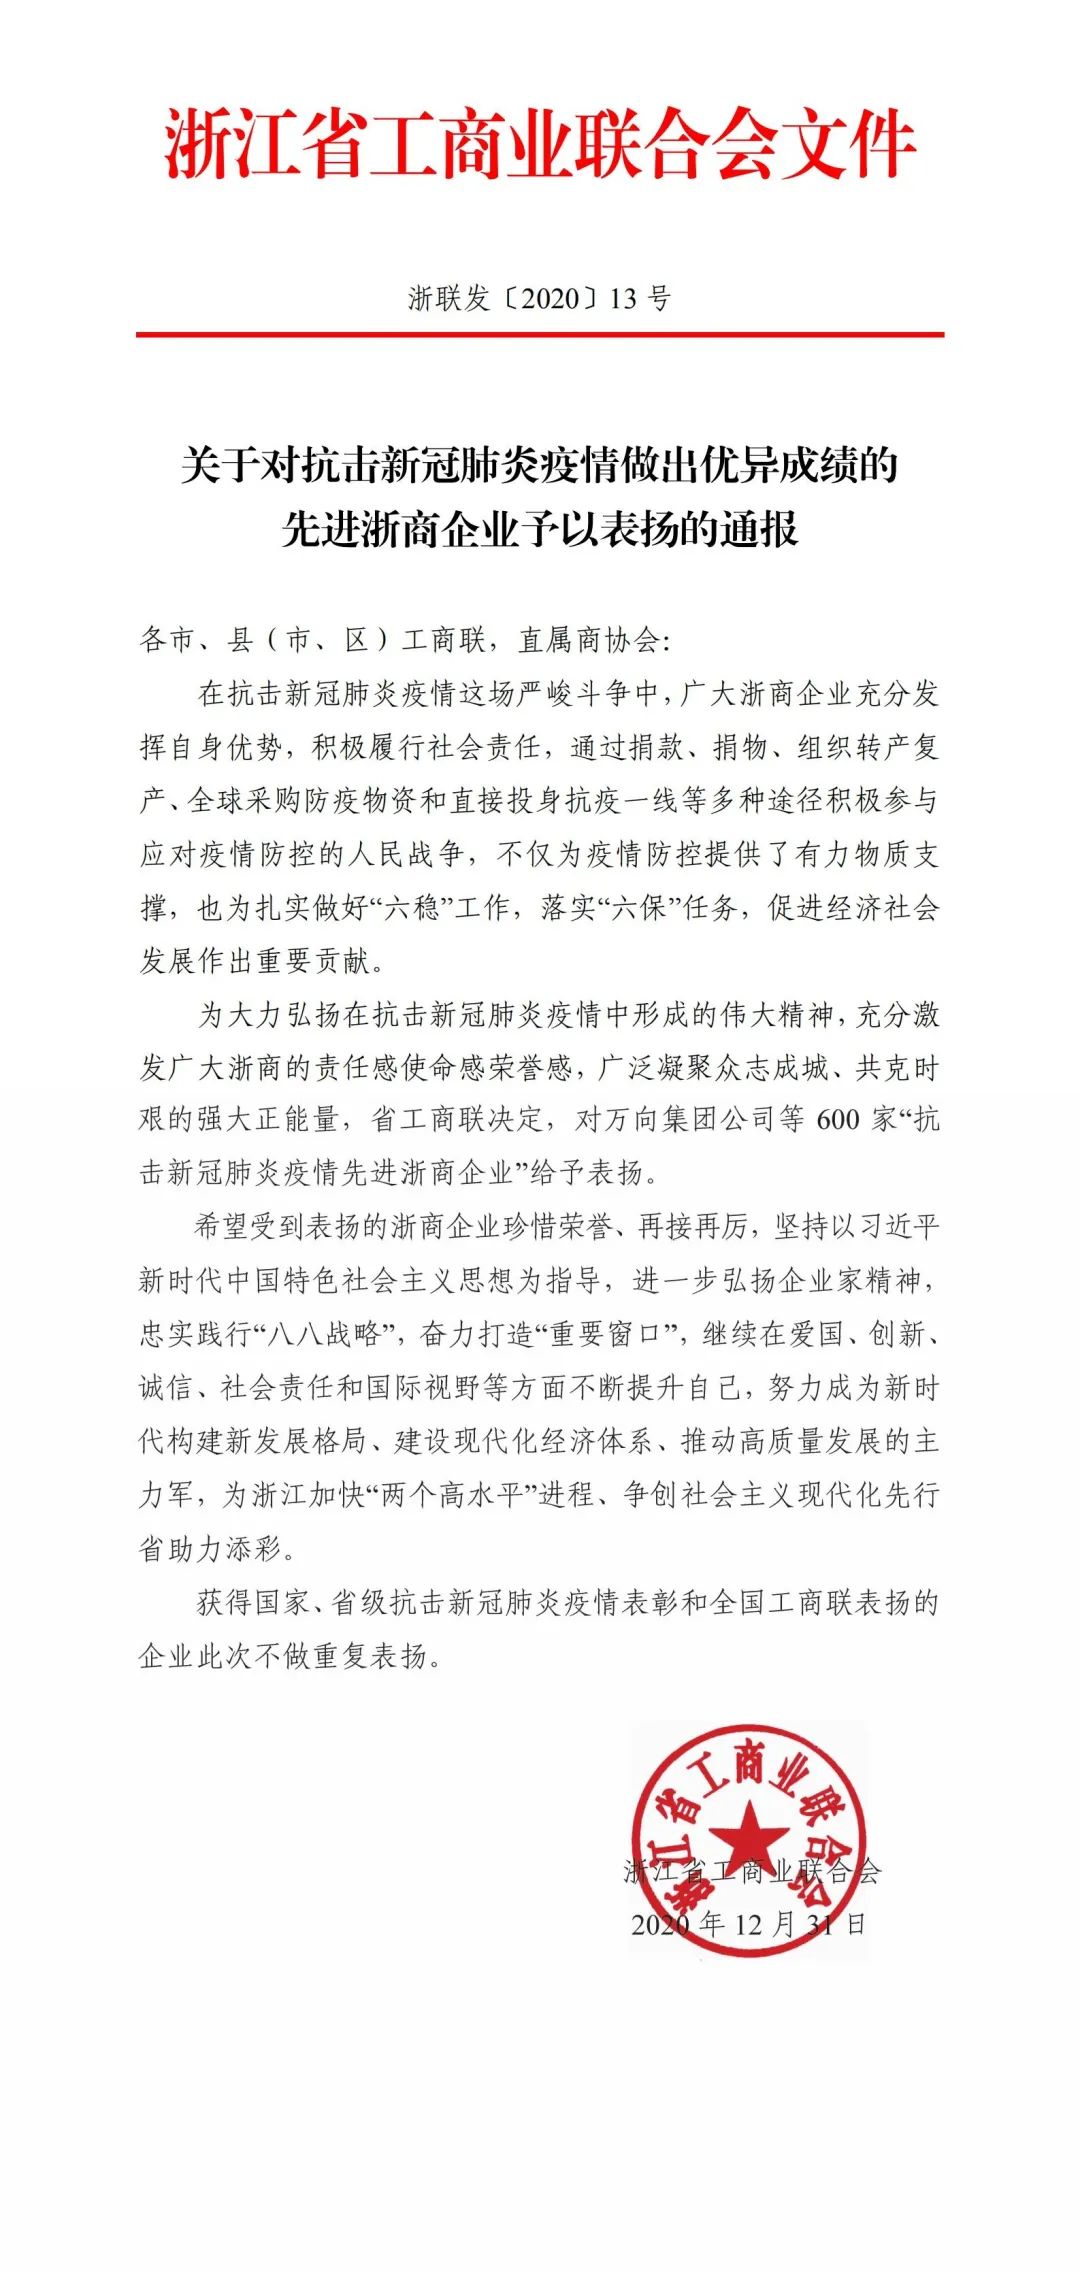 【喜讯】我会常务副会长单位--杭州恩斯莱化工有限公司被评为“抗击新冠肺炎疫情先进浙商企业”